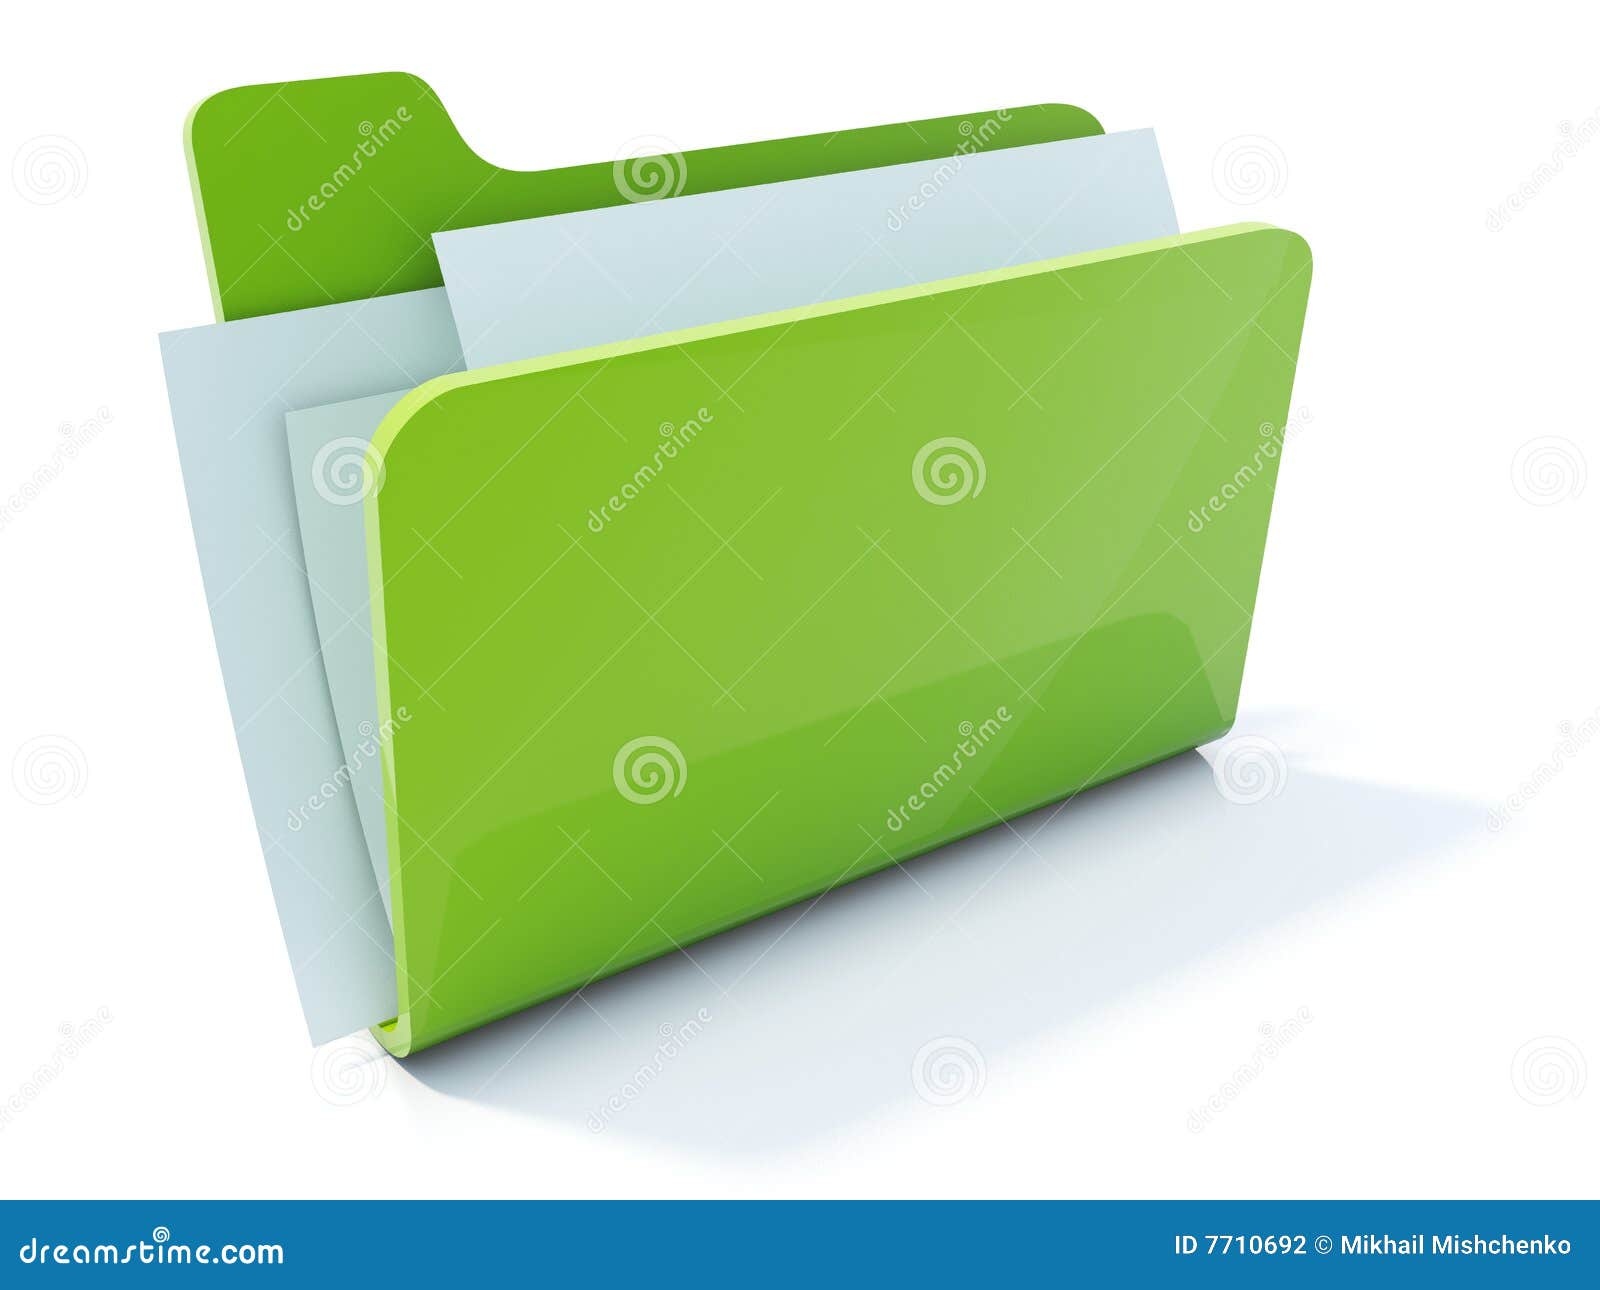 green folder clipart